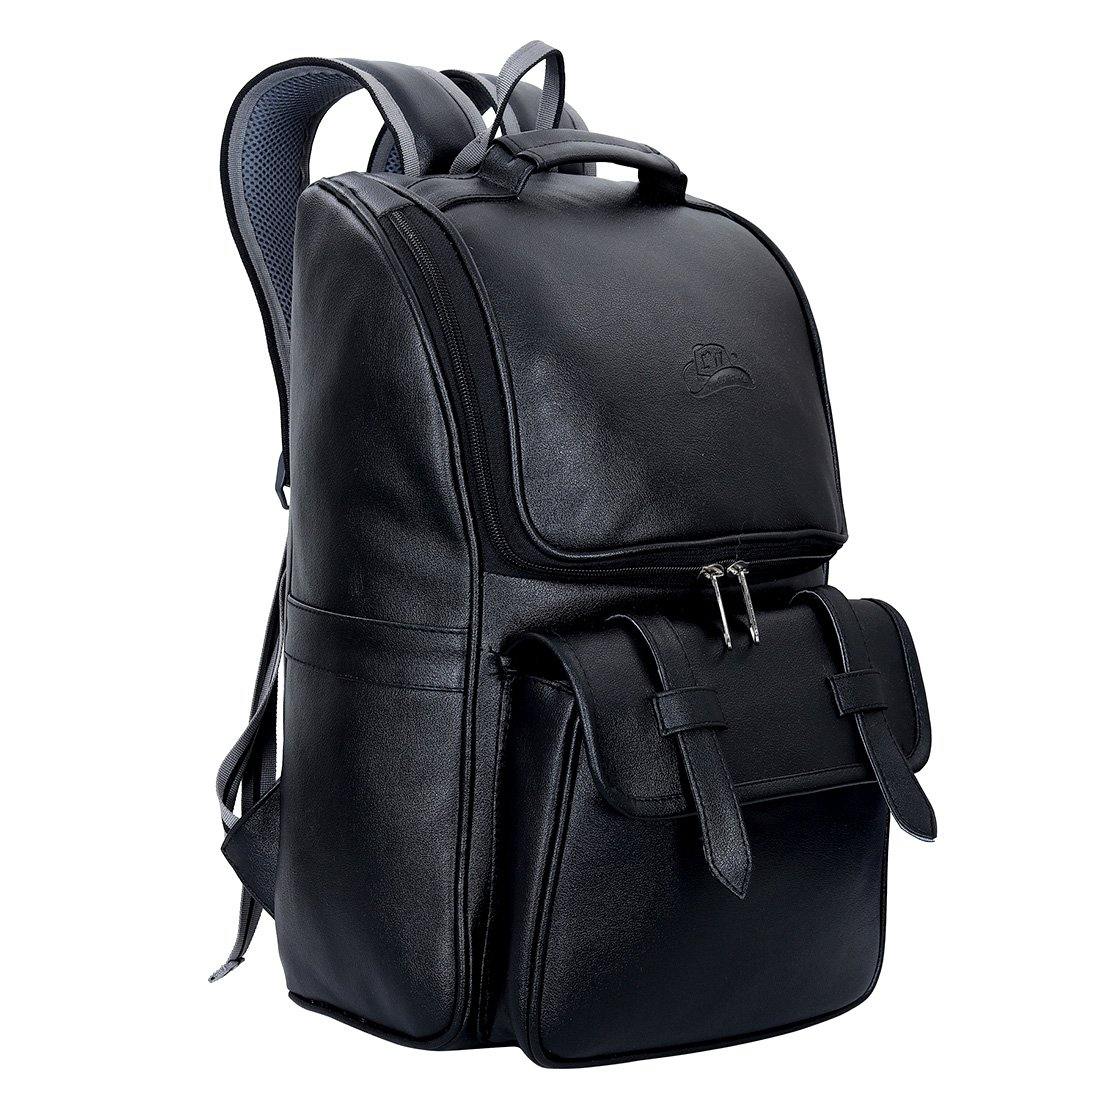 Leather World Premium Leatherette Unisex Backpack - Leatherworldonline.net